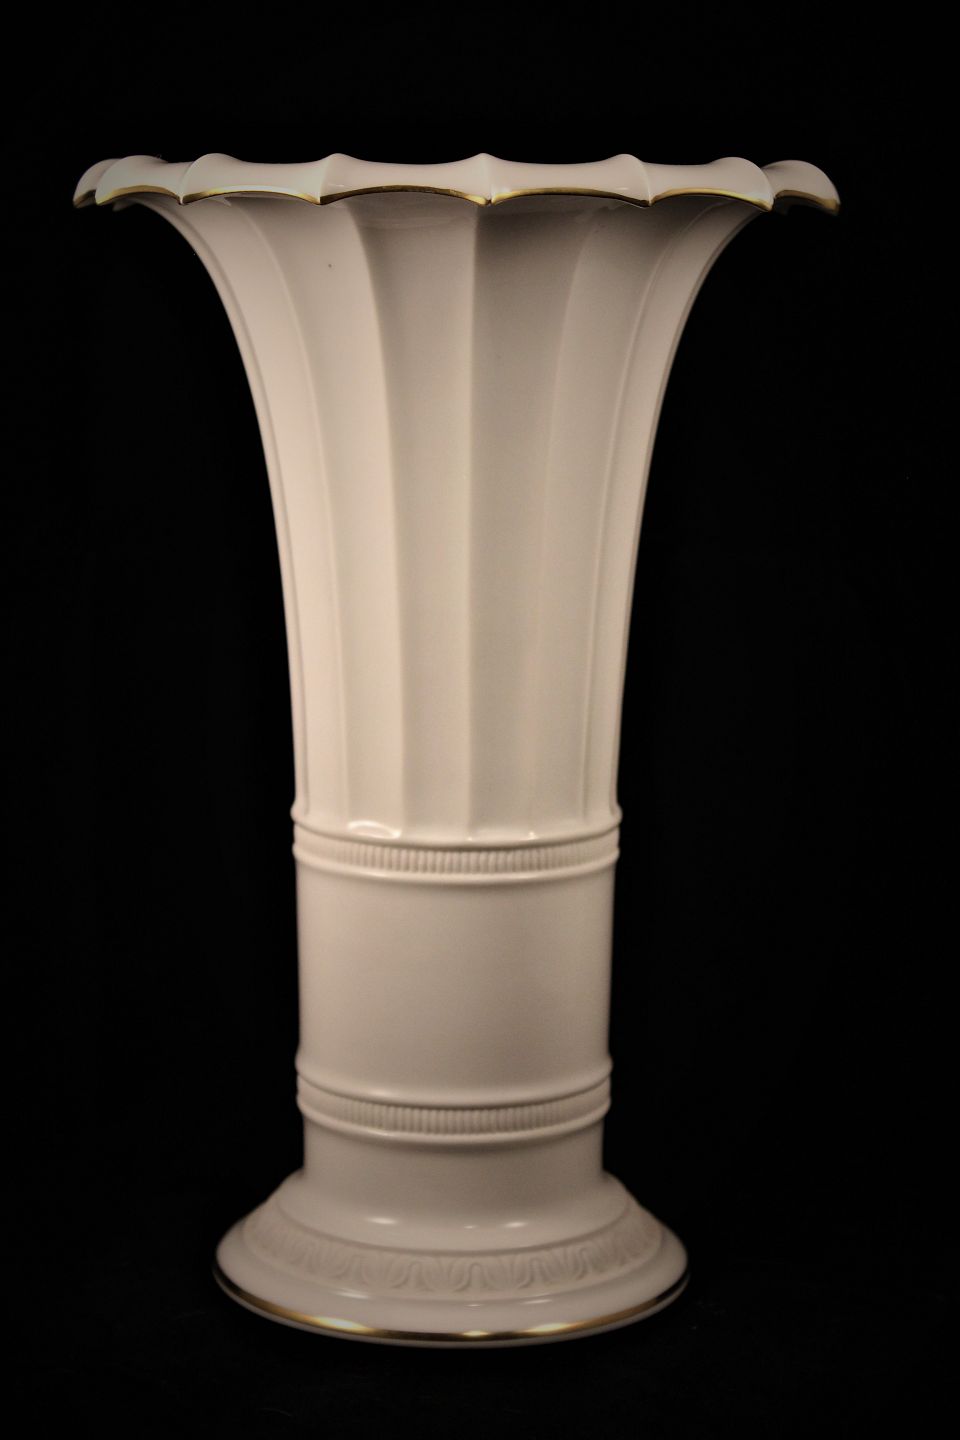 www.Antikvitet.net - Hetsch vase fra Copenhagen , hvid med guldkant. * 482/8569. 1958.